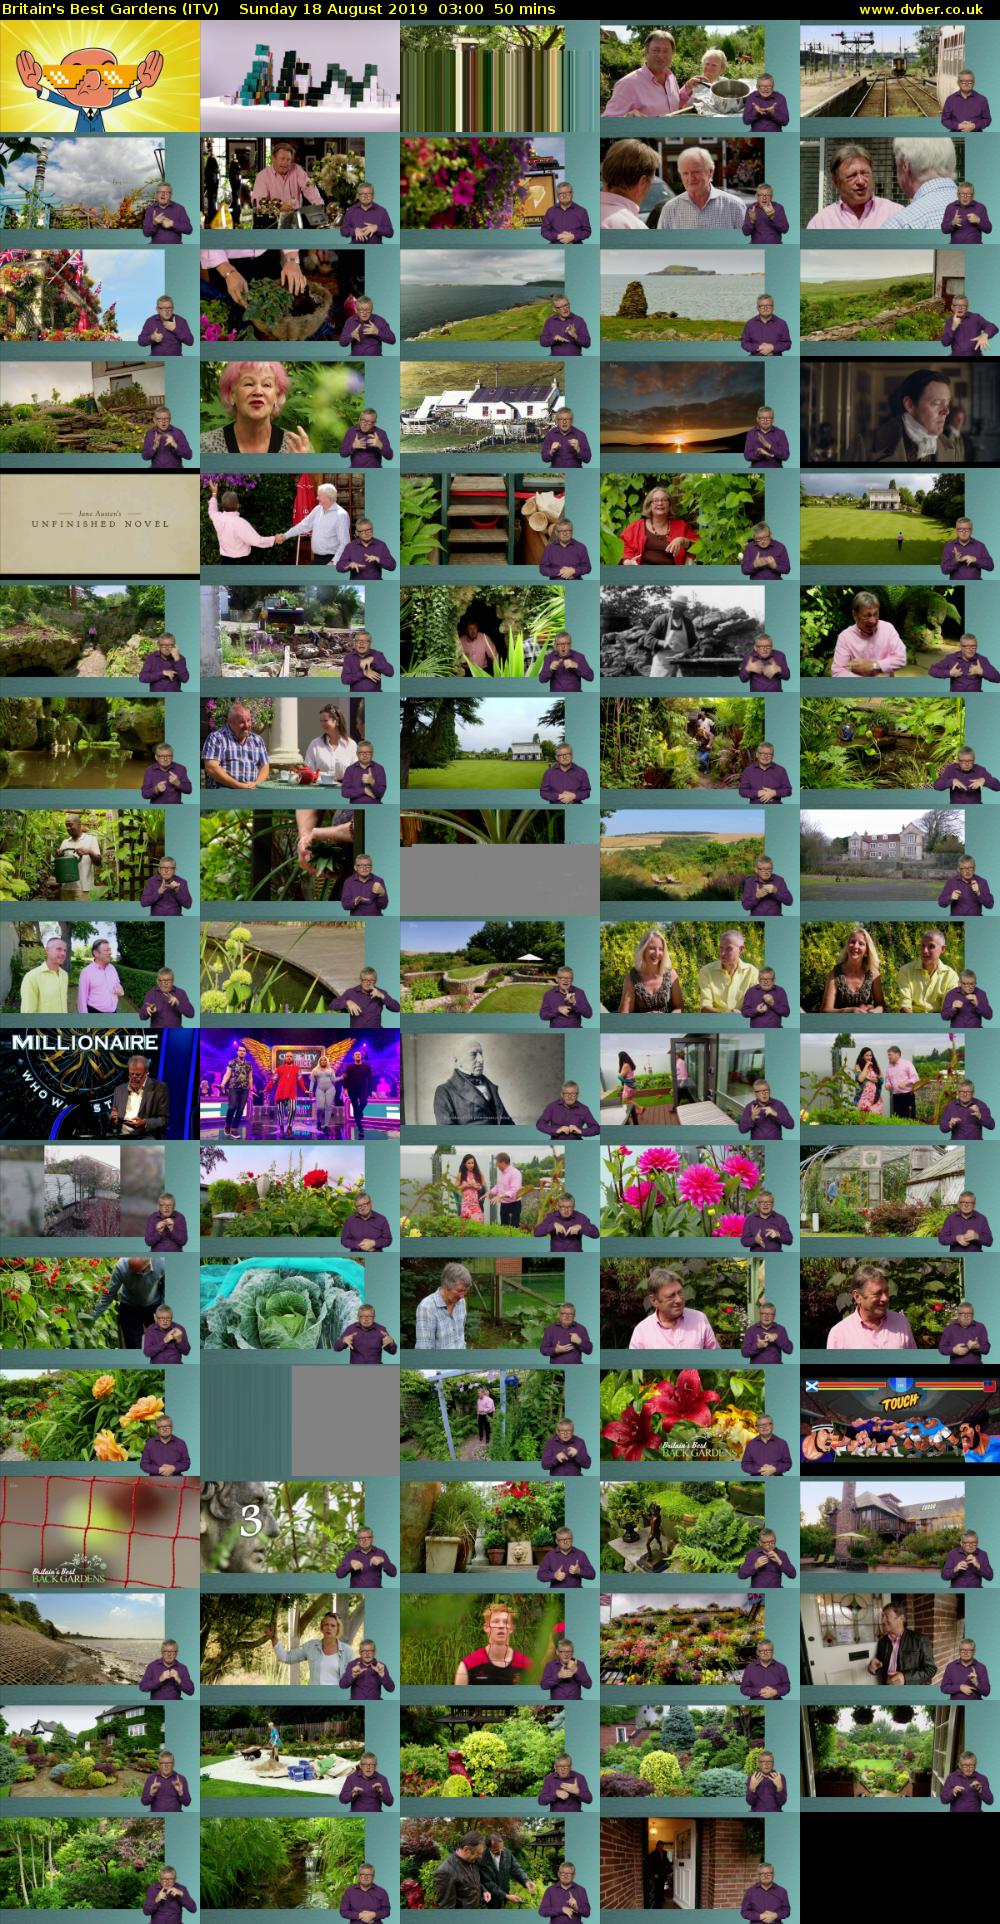 Britain's Best Gardens (ITV) Sunday 18 August 2019 03:00 - 03:50